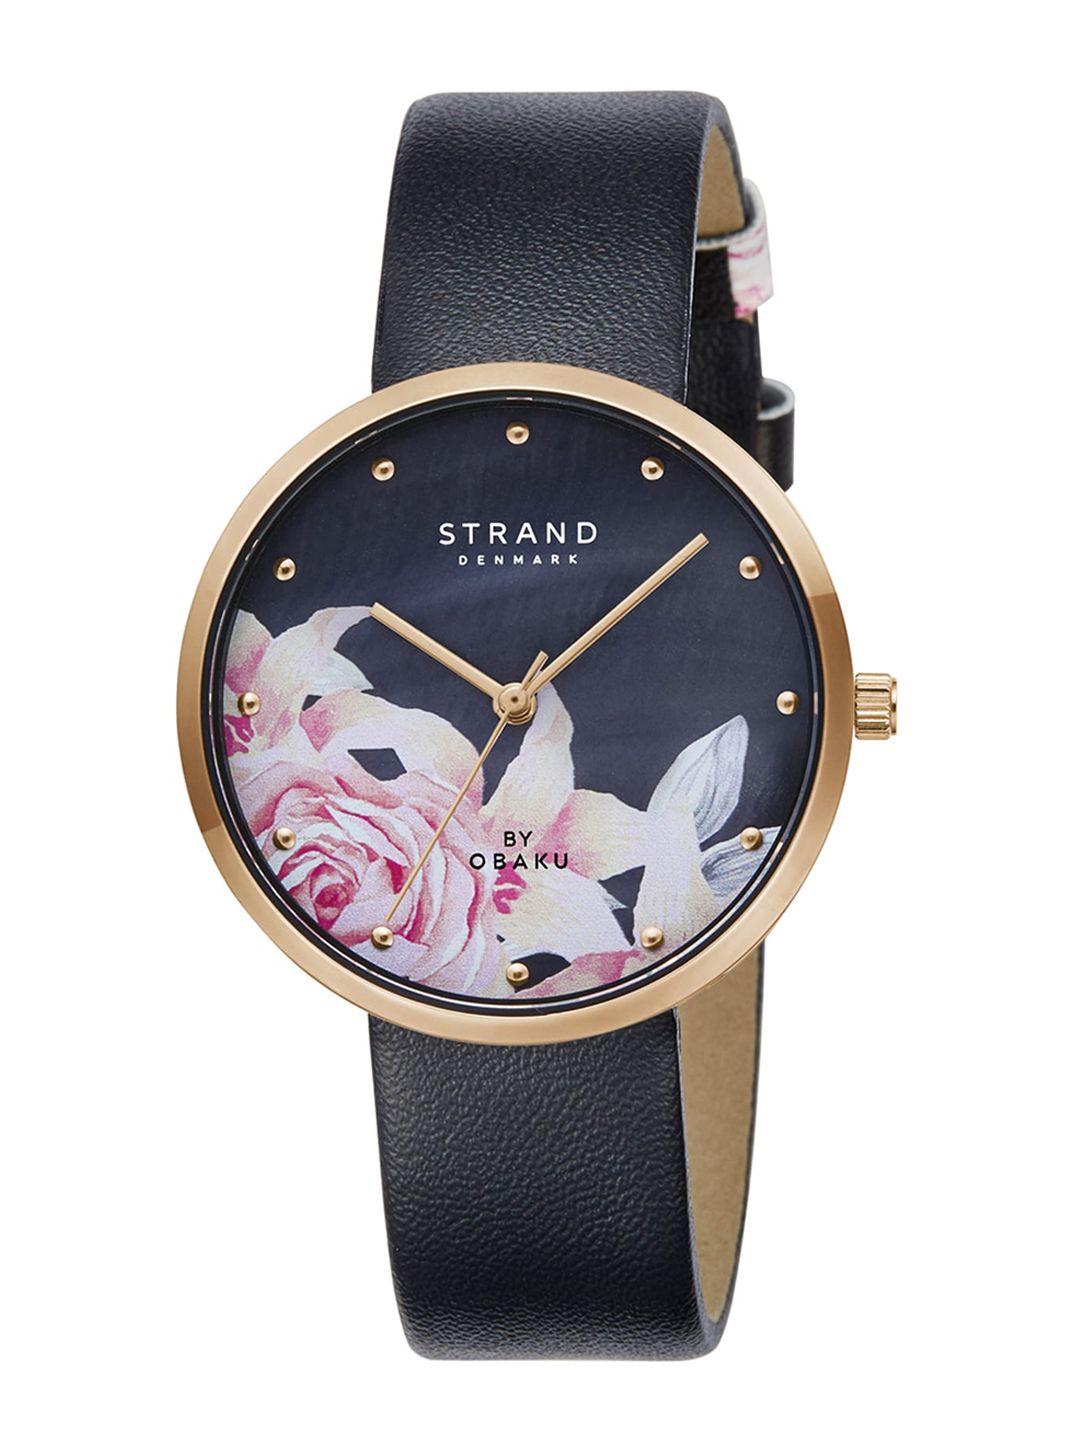 strand-by-obaku-women-black-brass-printed-dial-&-black-leather-straps-analogue-watch-s700lxvbrb-dk